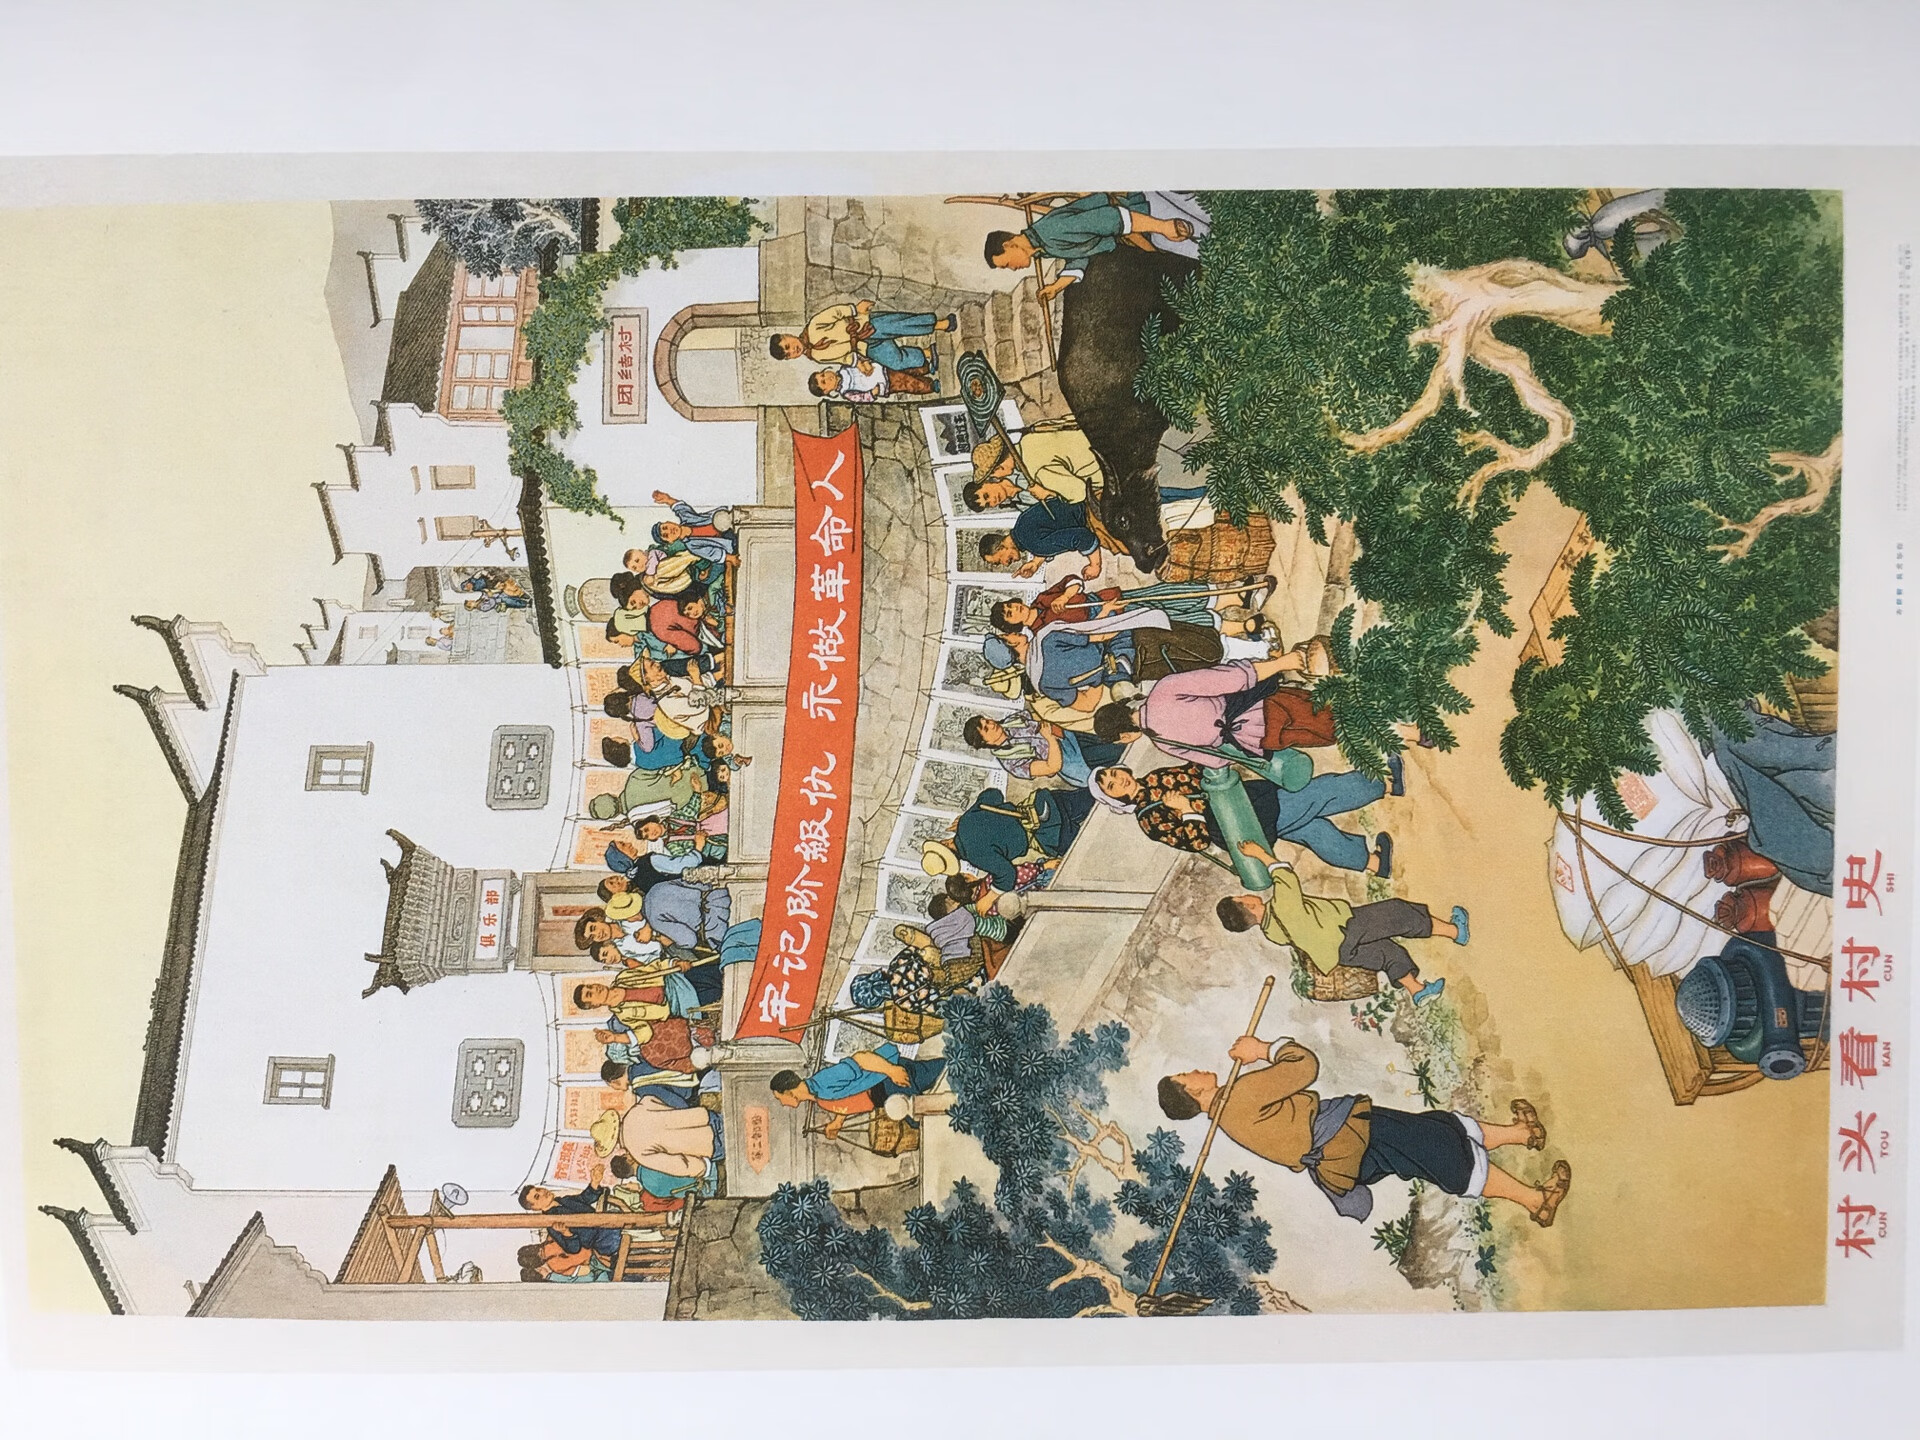 这套上海这边每周出版抽得出。这套书有爱的画家画的画的很有特色，里面全都是中国民间传统故事，小学生也可以多看看增加课外认识。